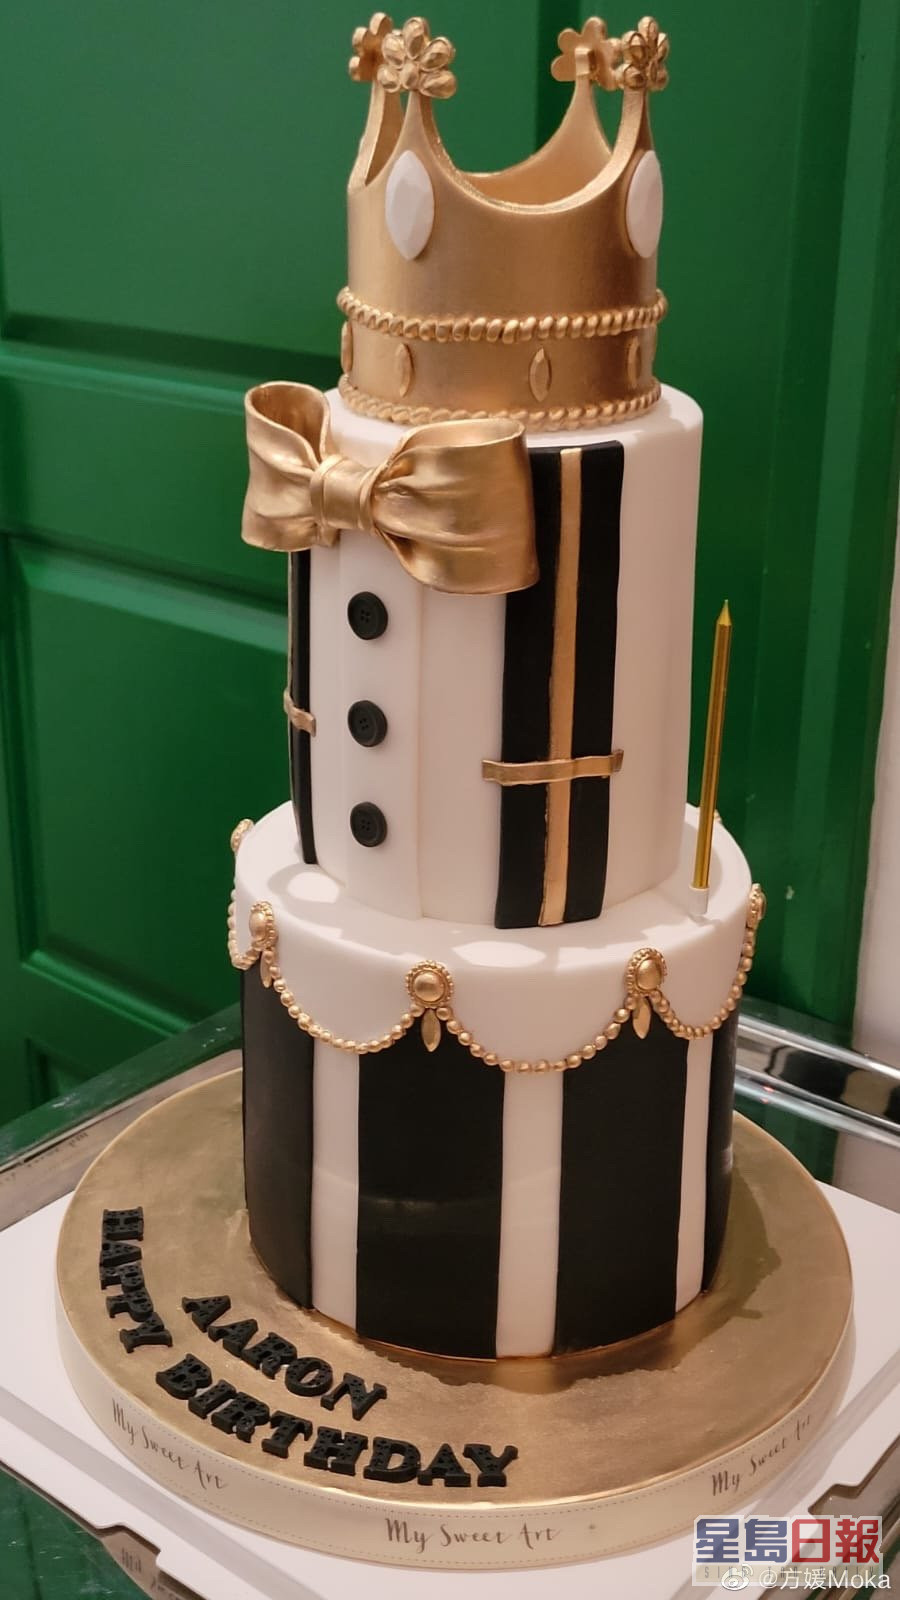 生日蛋糕變返有個大王冠，襯晒「舞台王者」稱號！